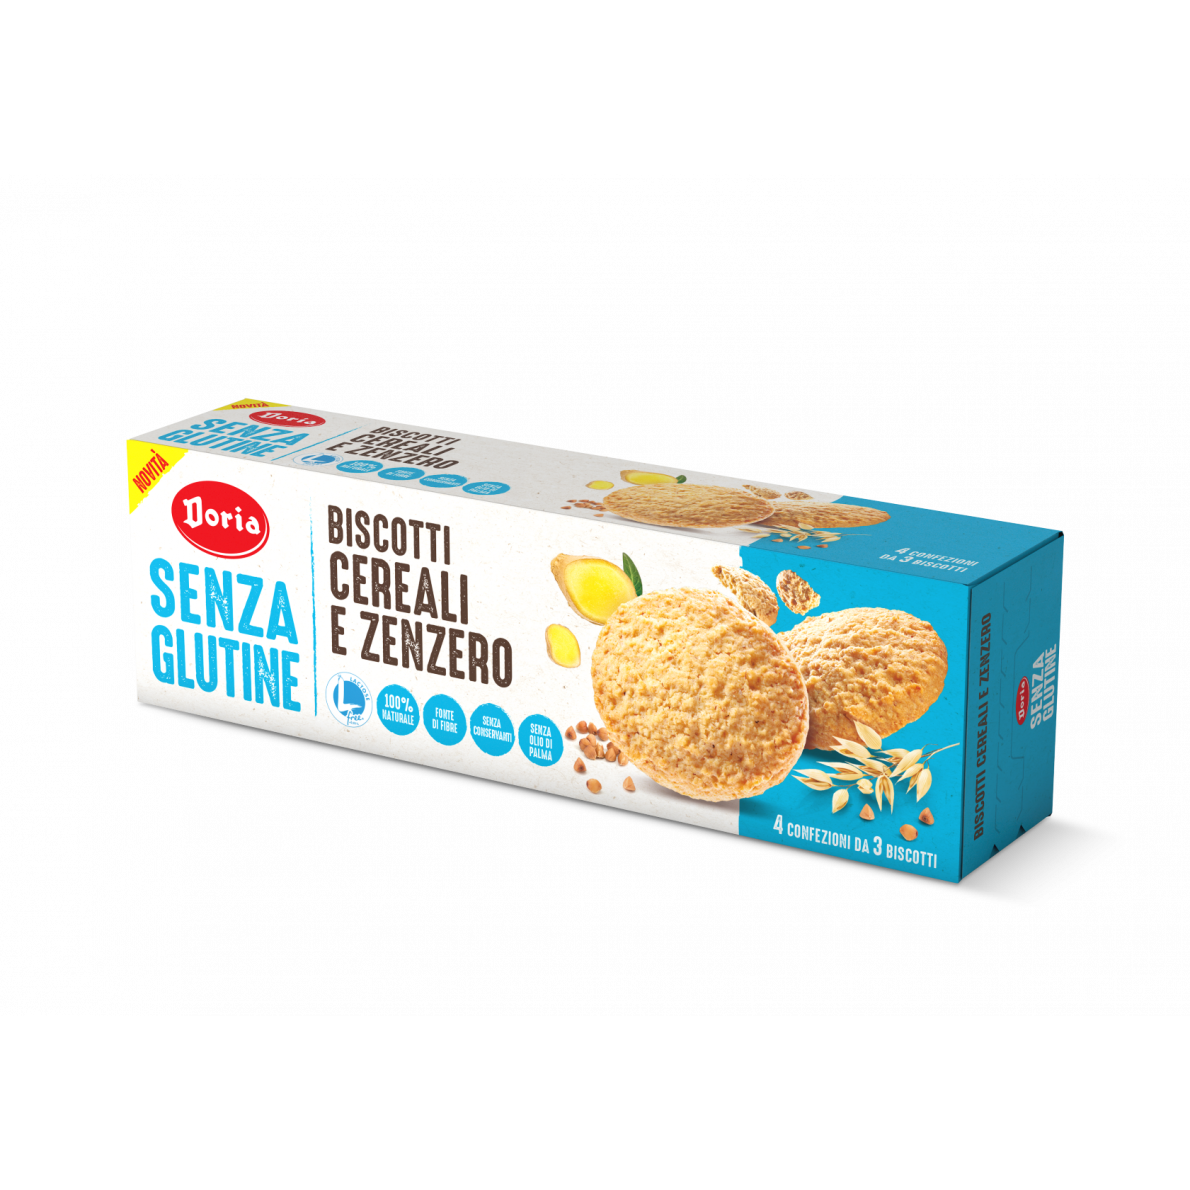 Biscotti cereali e zenzero - Doria